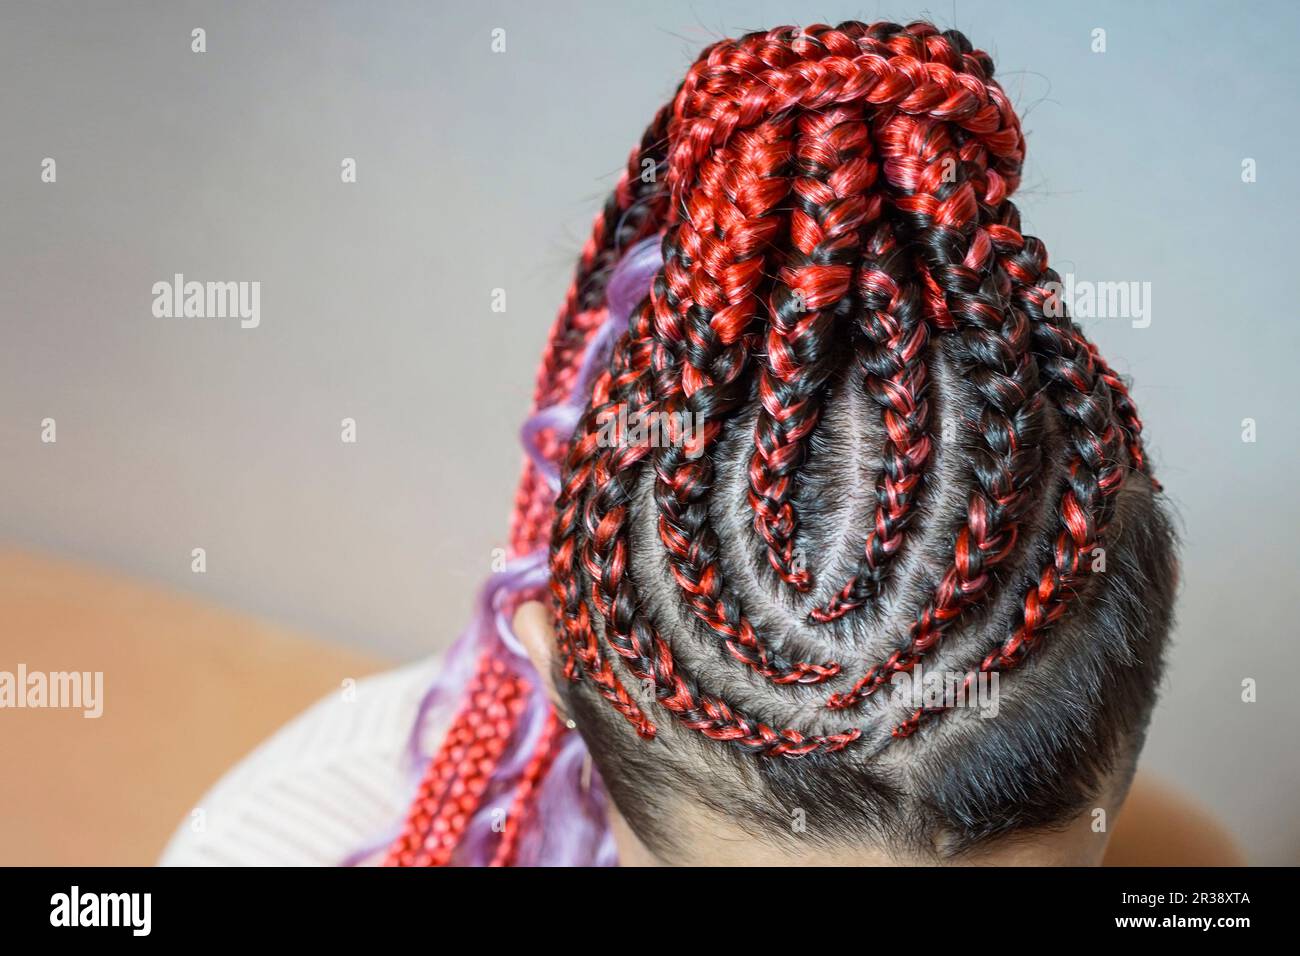 Cornrows Frauen häkeln wunderschöne Kanekalon-Locken, die mit einem Haken in das Haar gewebt sind, afrikanische Frisur mit künstlichem Haar Stockfoto